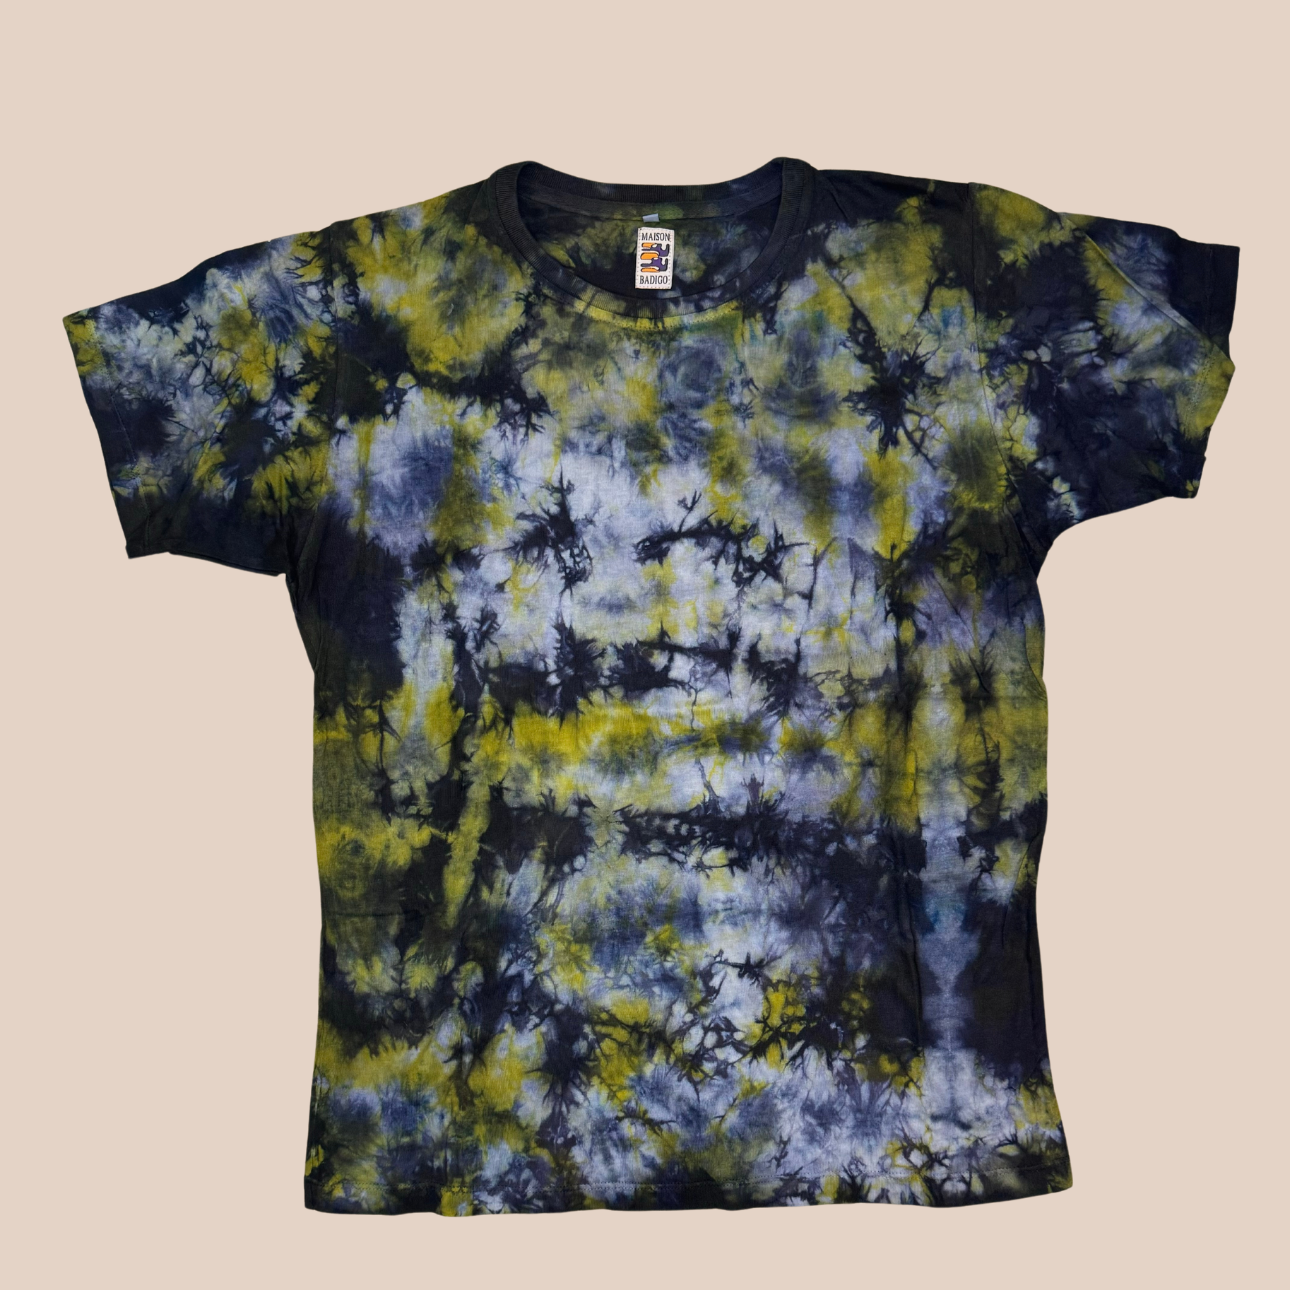 Image du t-shirt Tie and Dye de Maison Badigo, t-shirt en coton organique multicolore unique et tendance